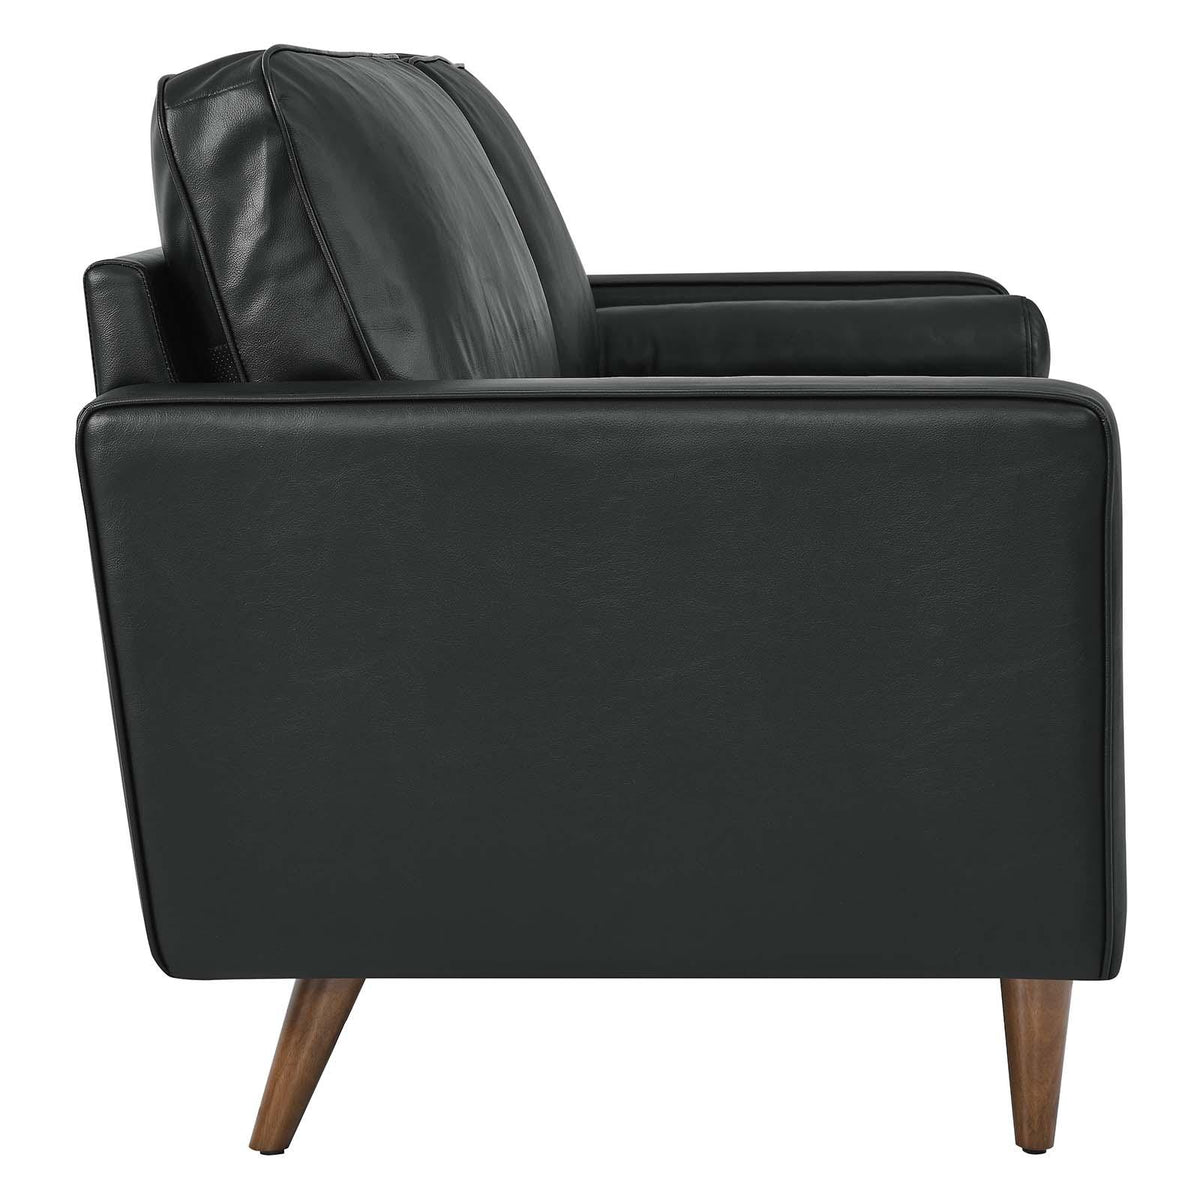 Modway Furniture Modern Valour Leather Sofa - EEI-4633